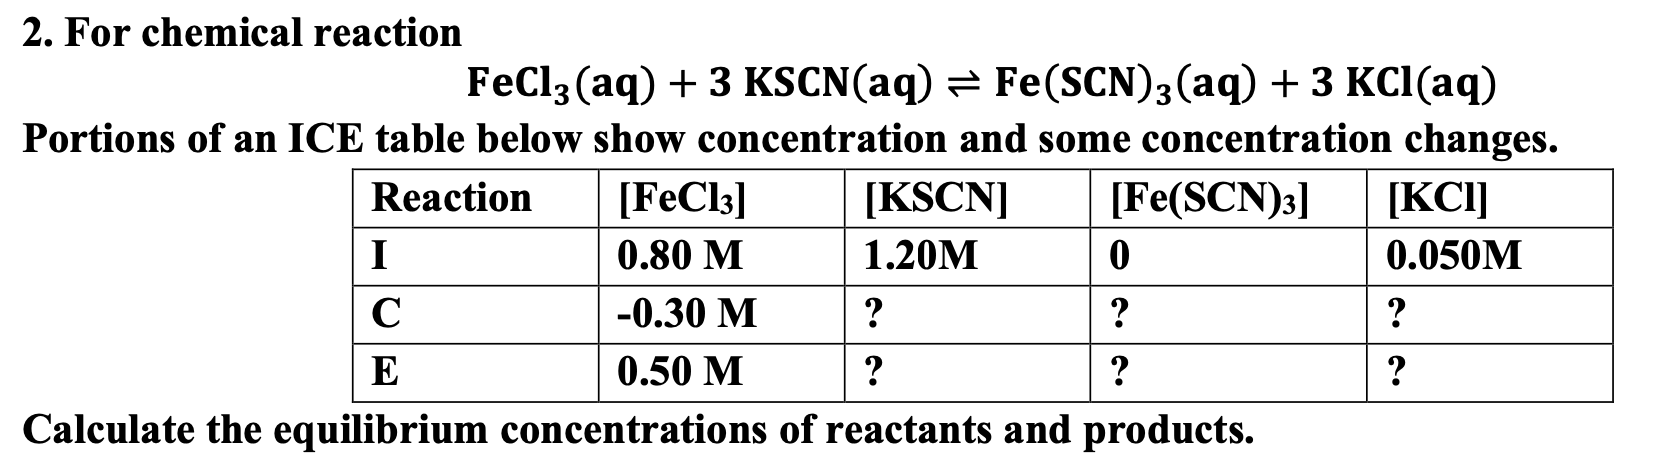 FeCl3 + KSCN: Tìm Hiểu Phản Ứng Hóa Học và Ứng Dụng Thực Tiễn